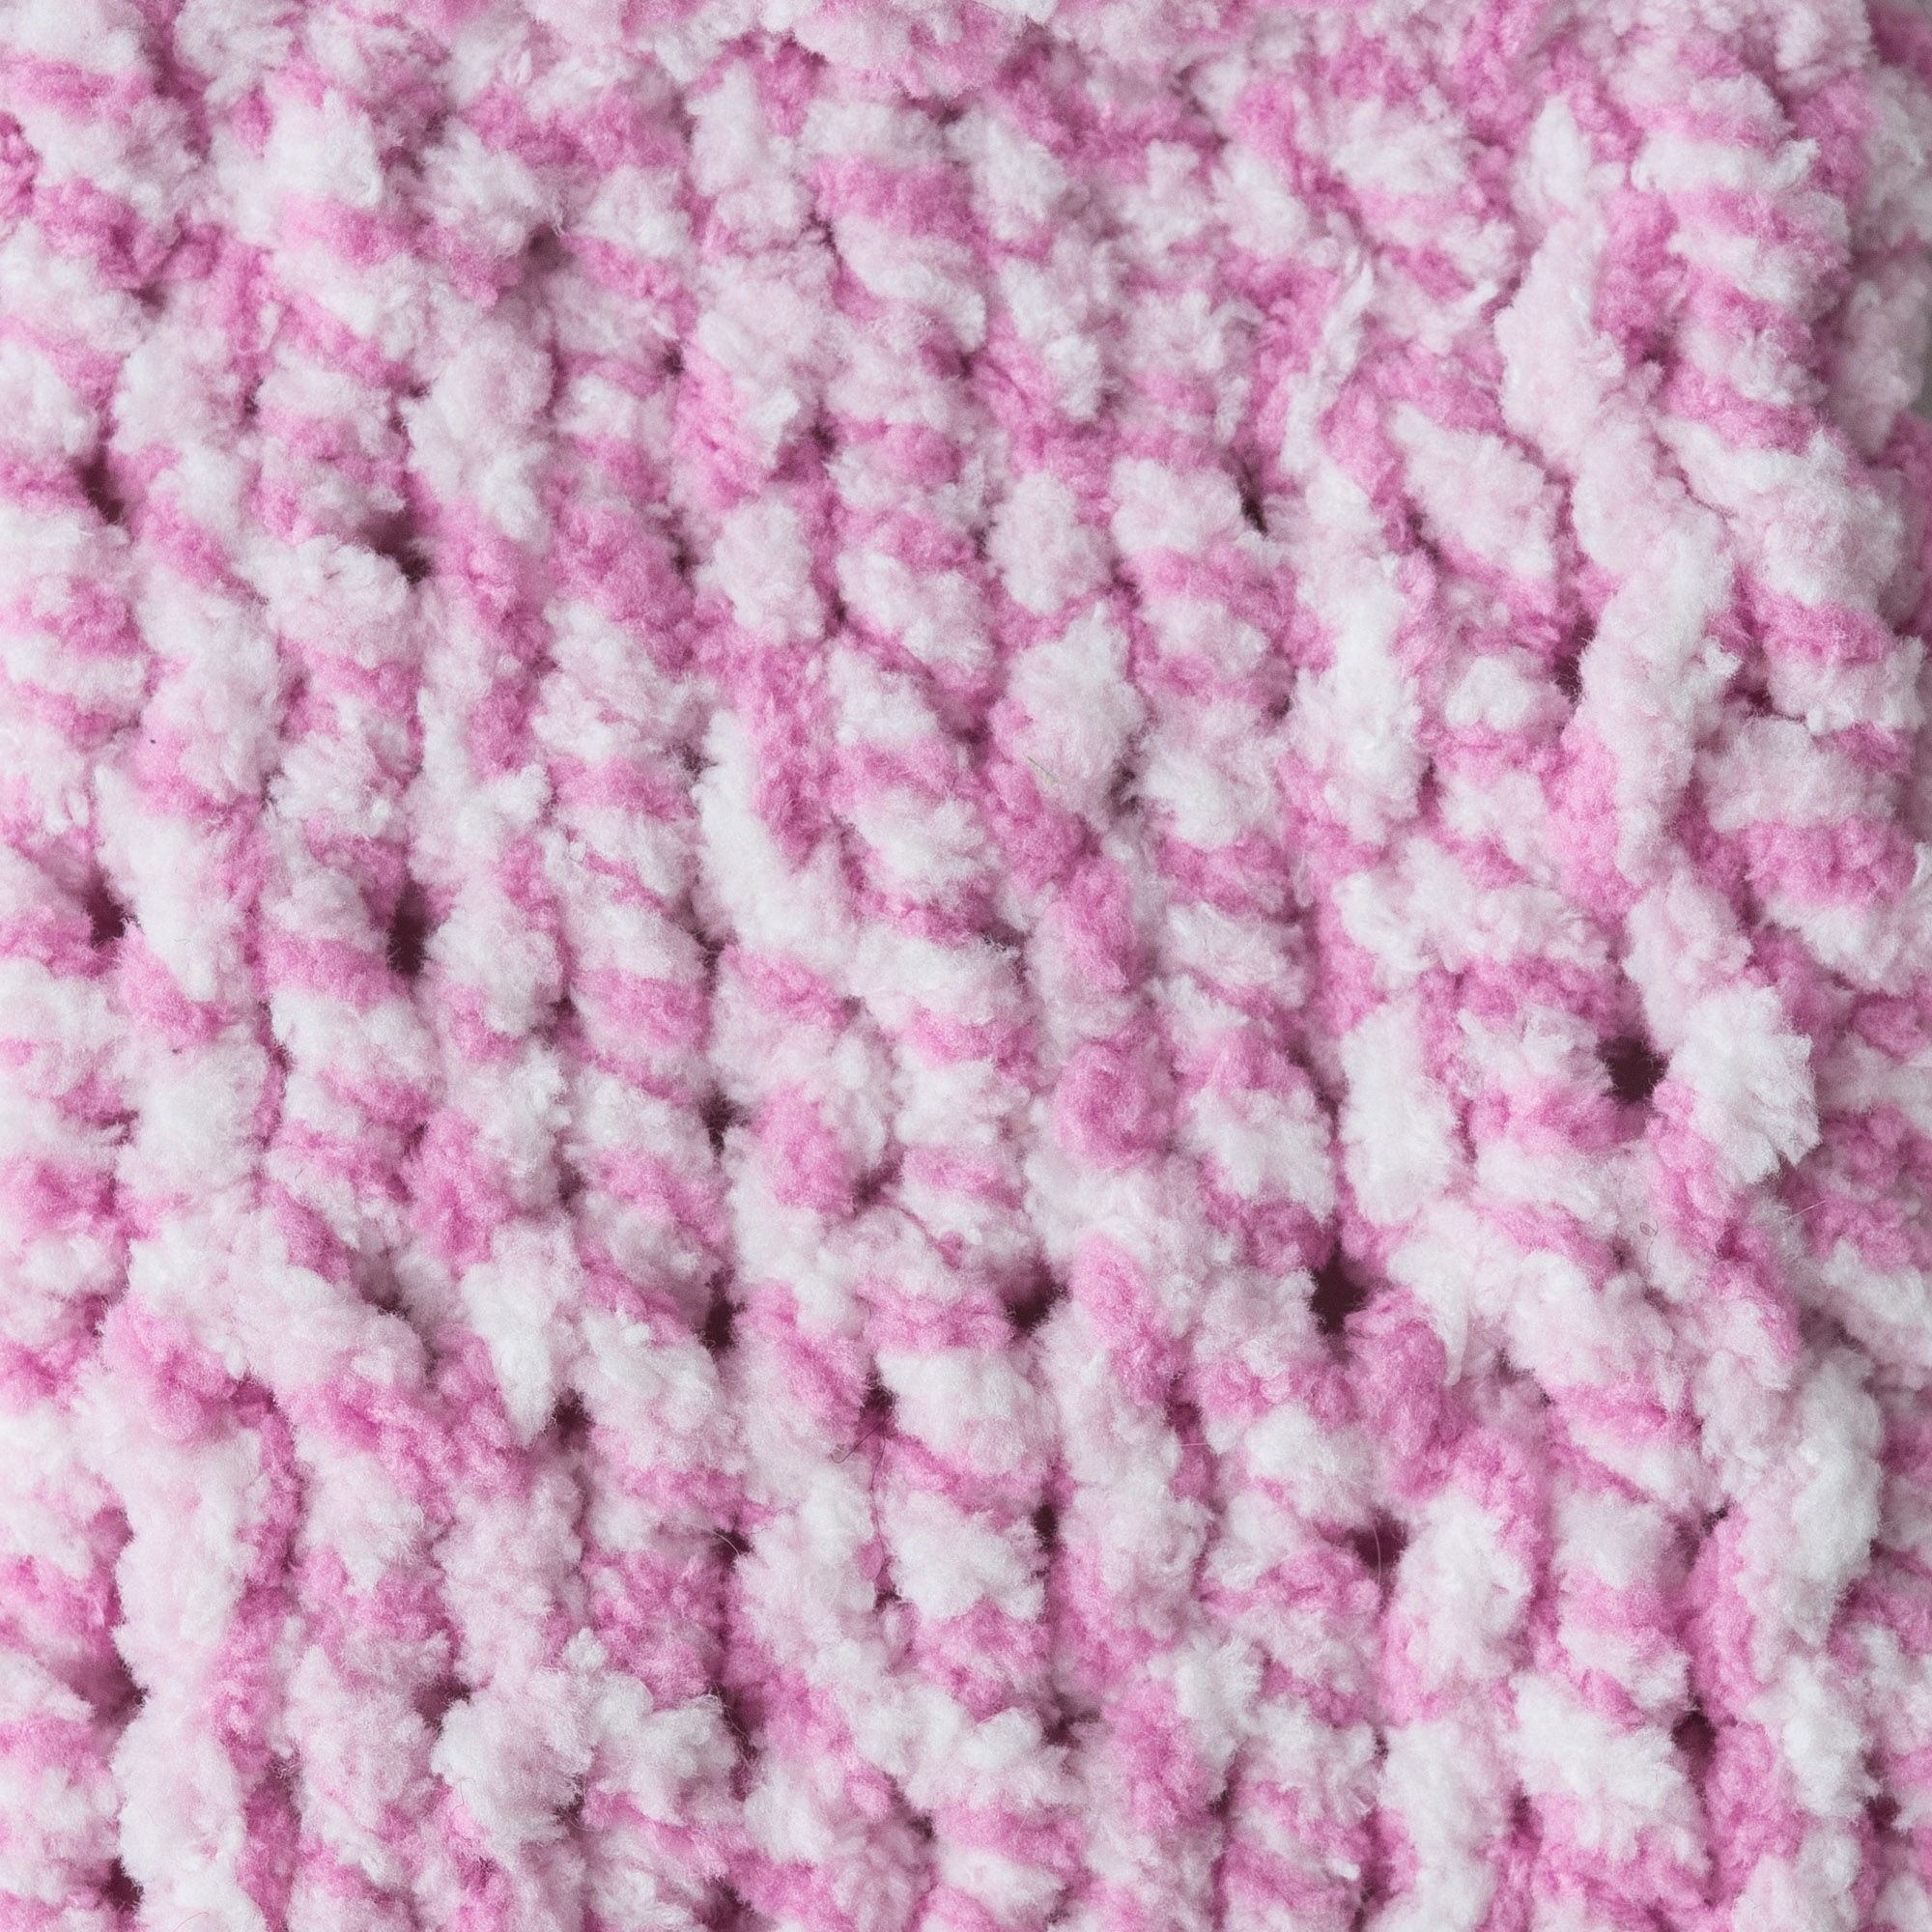 Crochet Patterns Baby Blankets Crochet Patterns Using Bernat Ba Blanket Yarn Luxury Bernat Ba